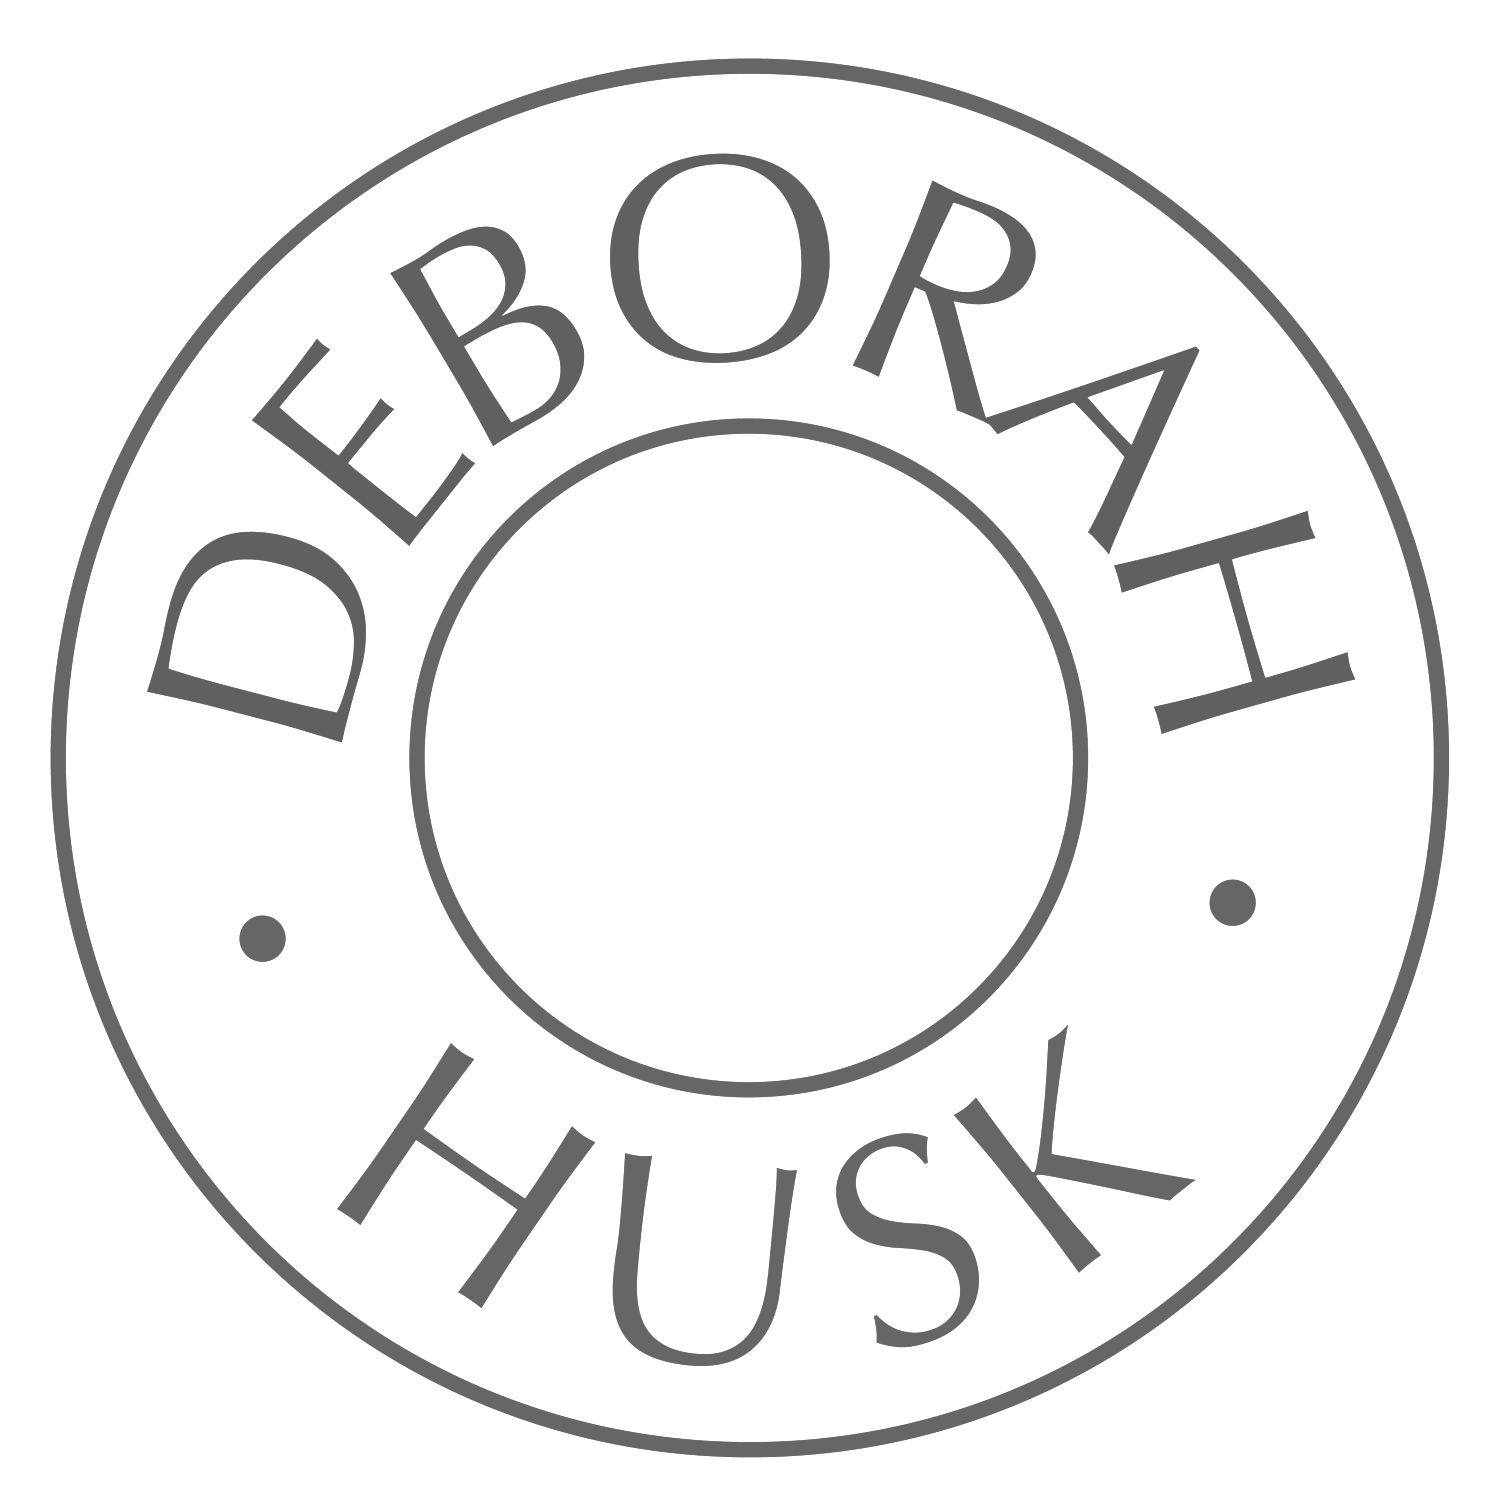 Deborah Husk